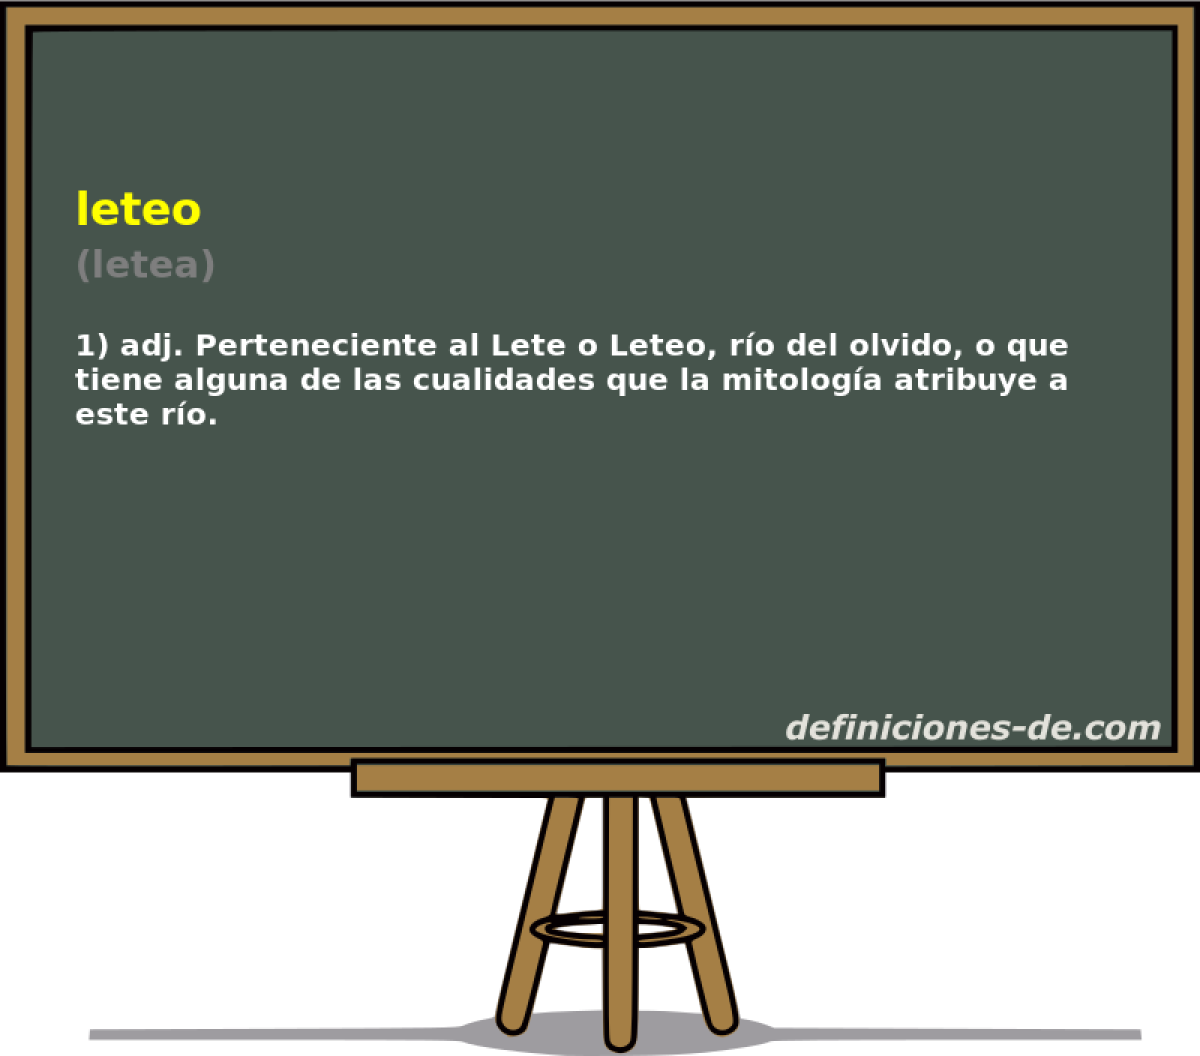 leteo (letea)